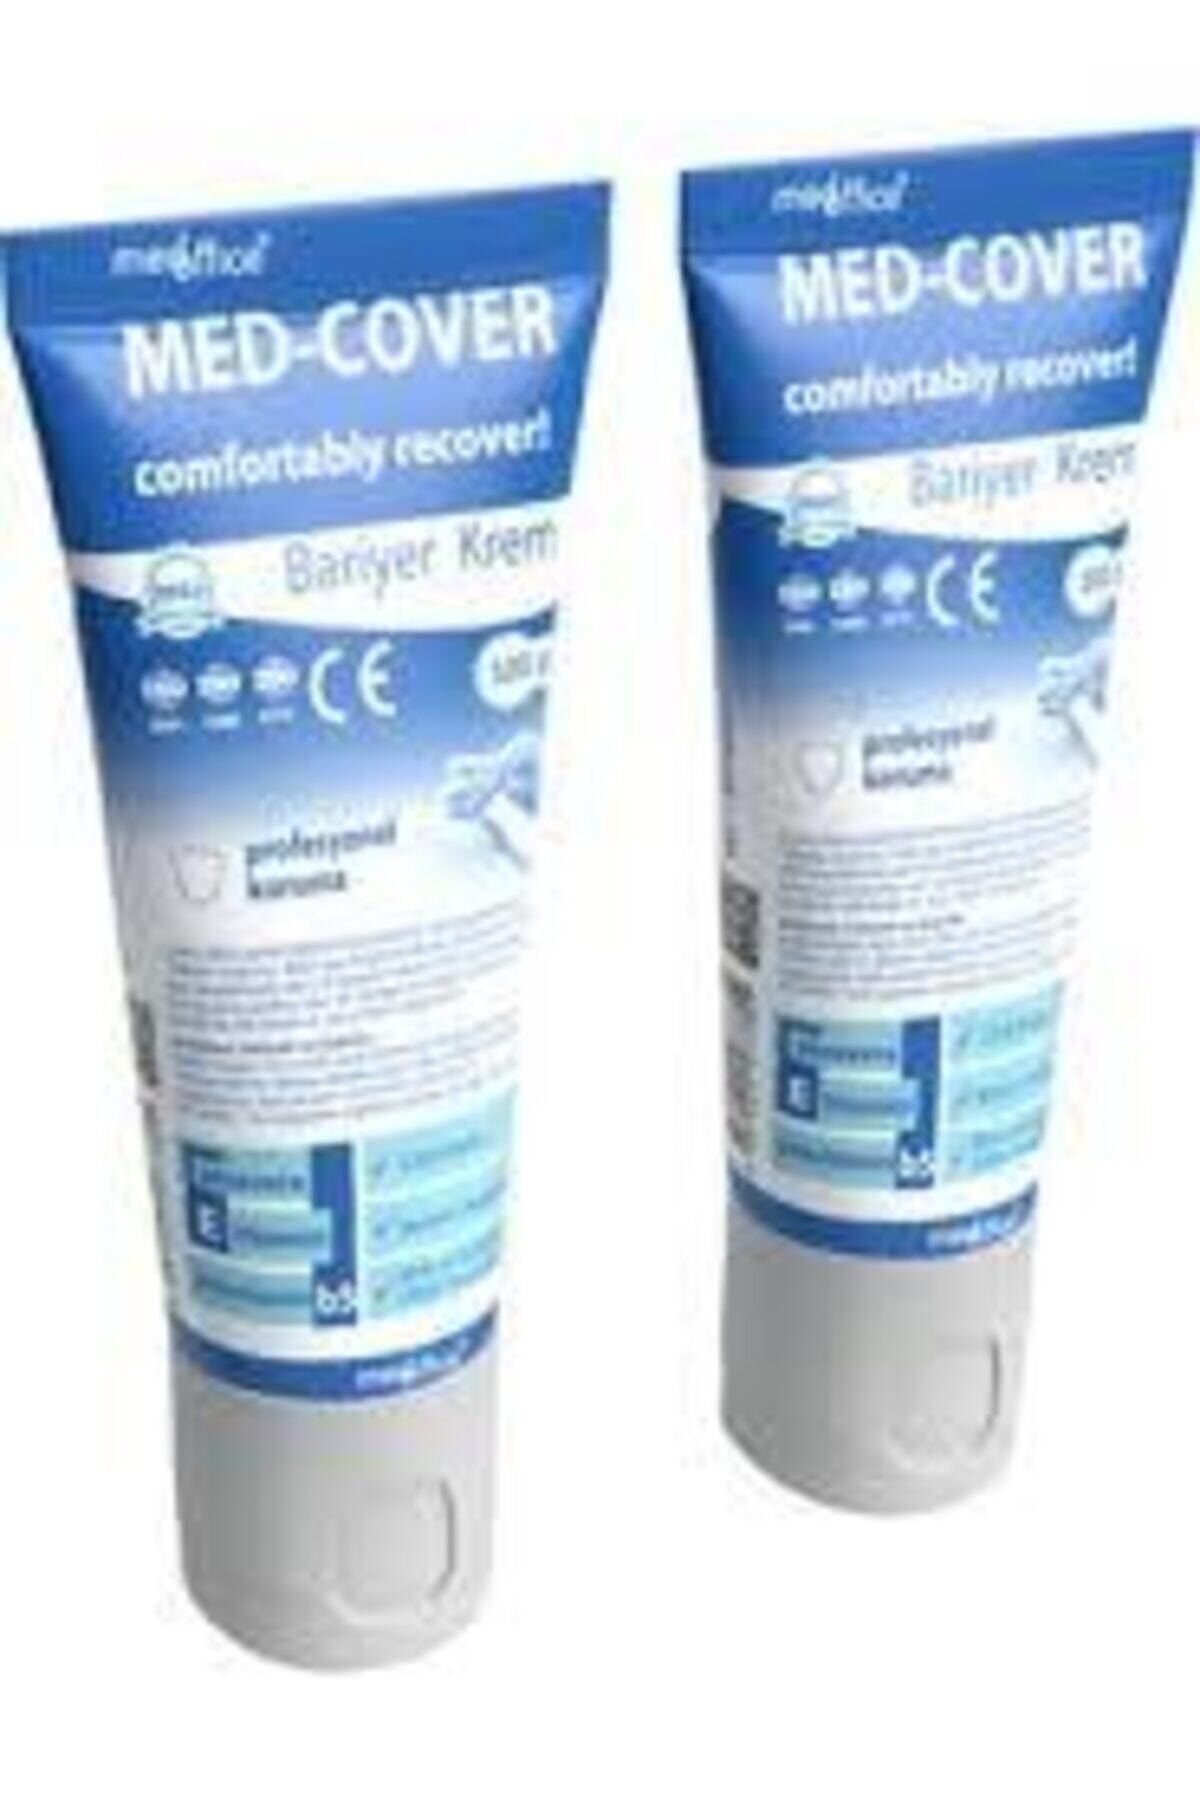 Medcover 100 Gr 2 Adet Med Cover Çinko Oksitli Bariyer Krem